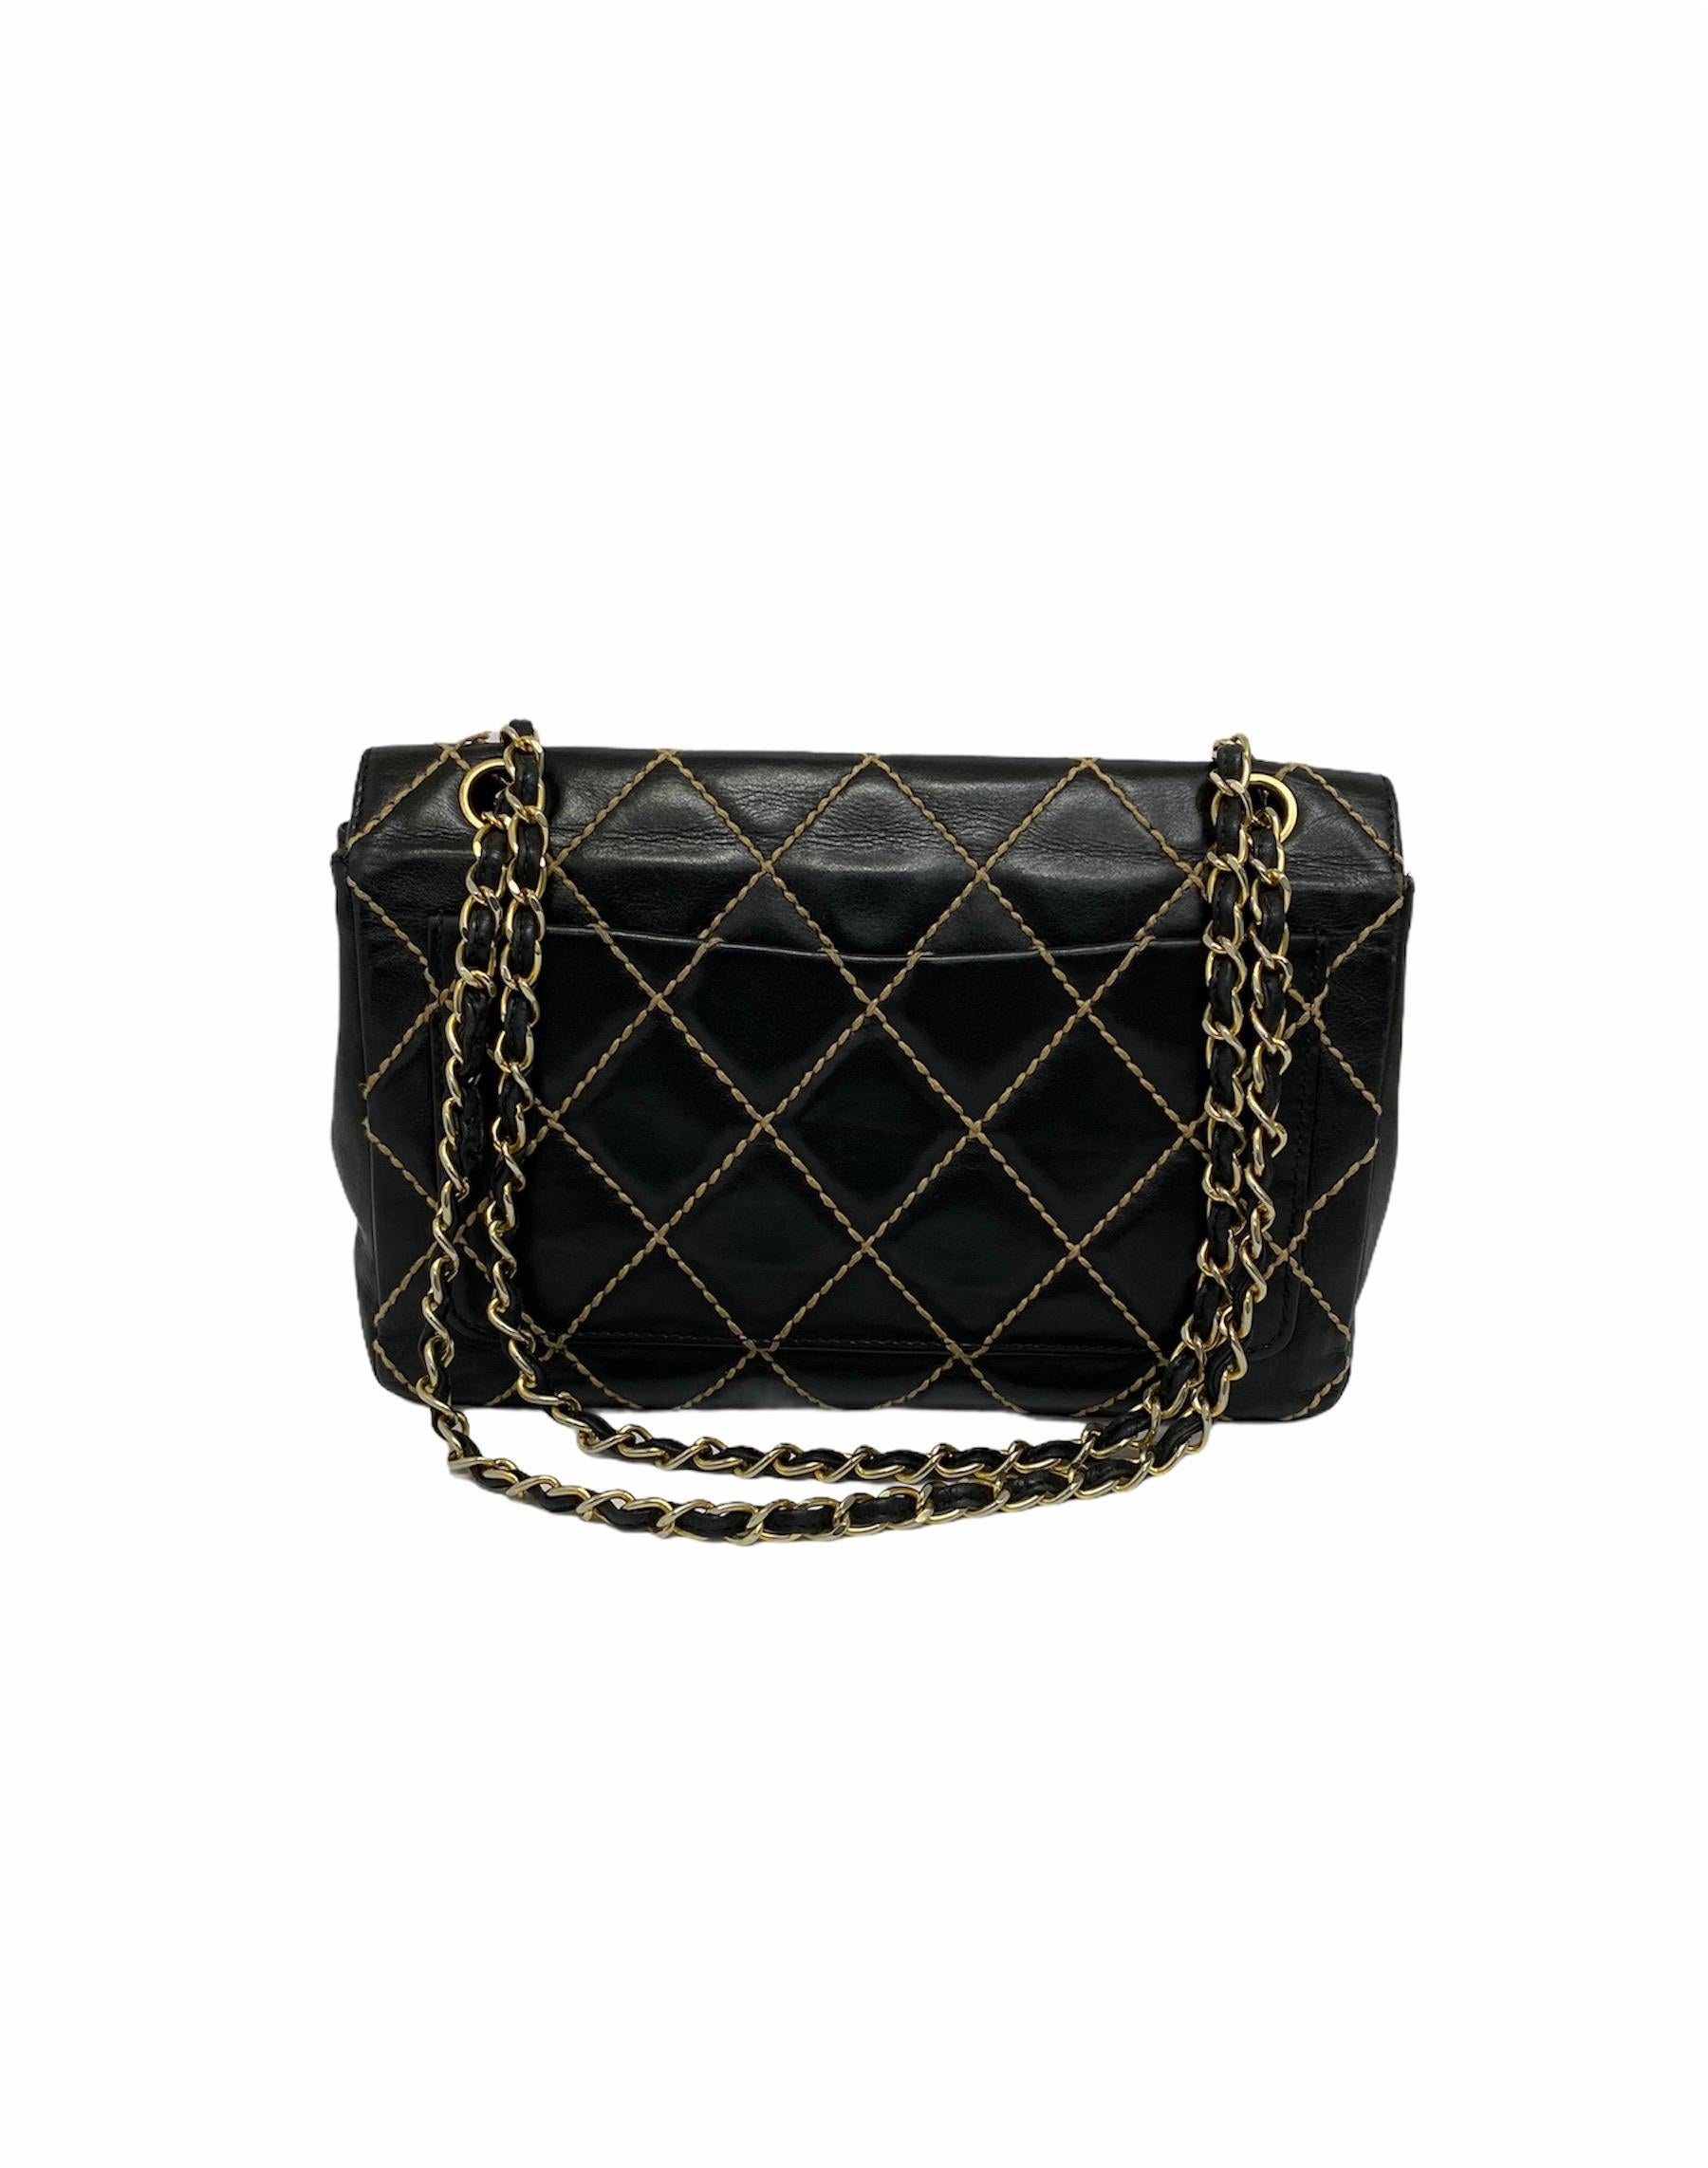 Chanel Black Leather Bag 1